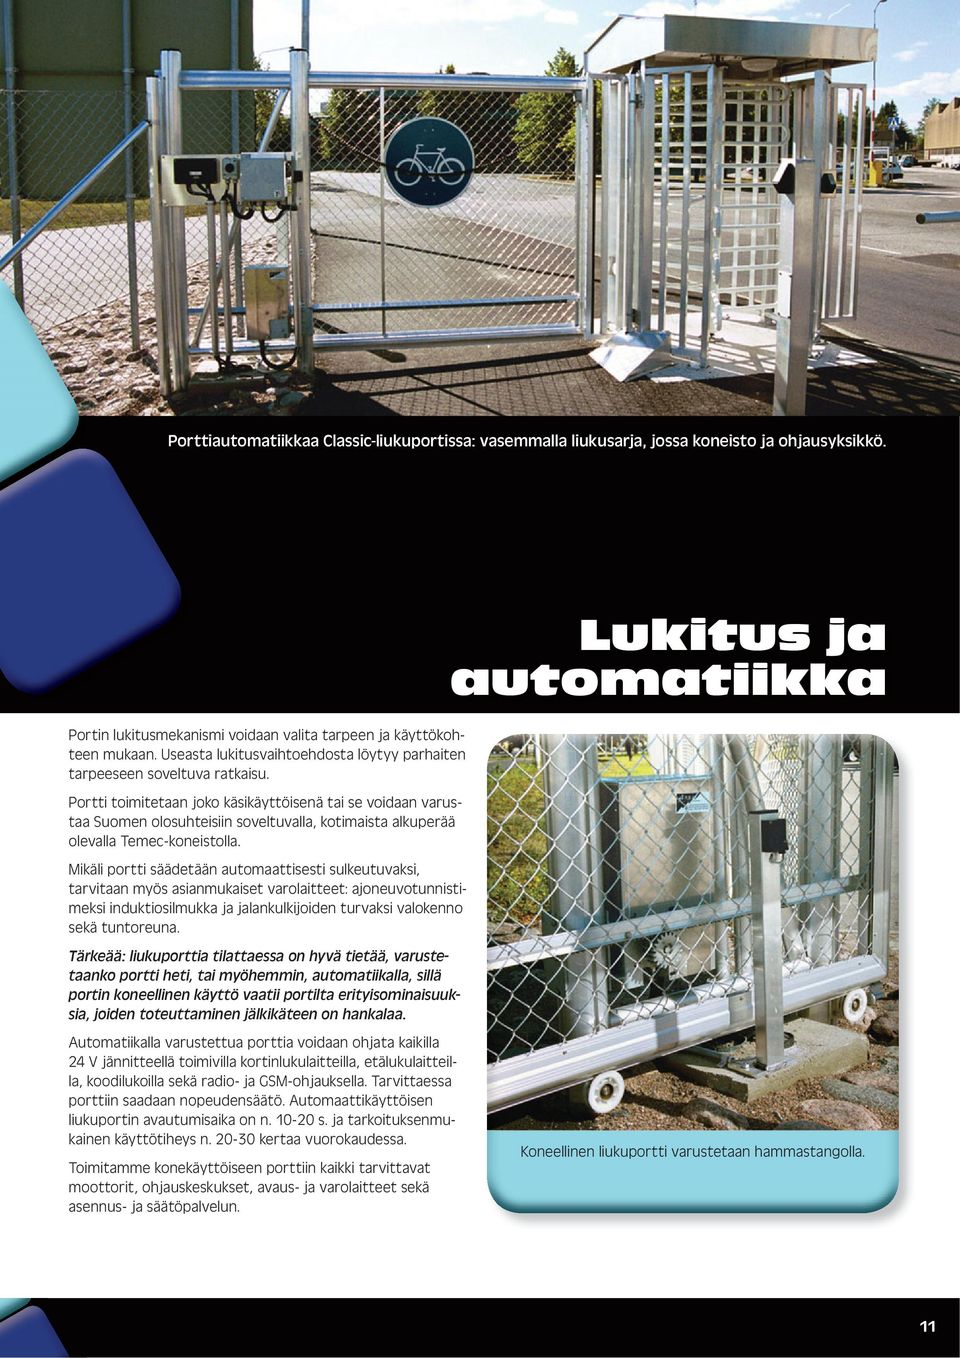 Portti toimitetaan joko käsikäyttöisenä tai se voidaan varustaa Suomen olosuhteisiin soveltuvalla, kotimaista alkuperää olevalla Temec-koneistolla.